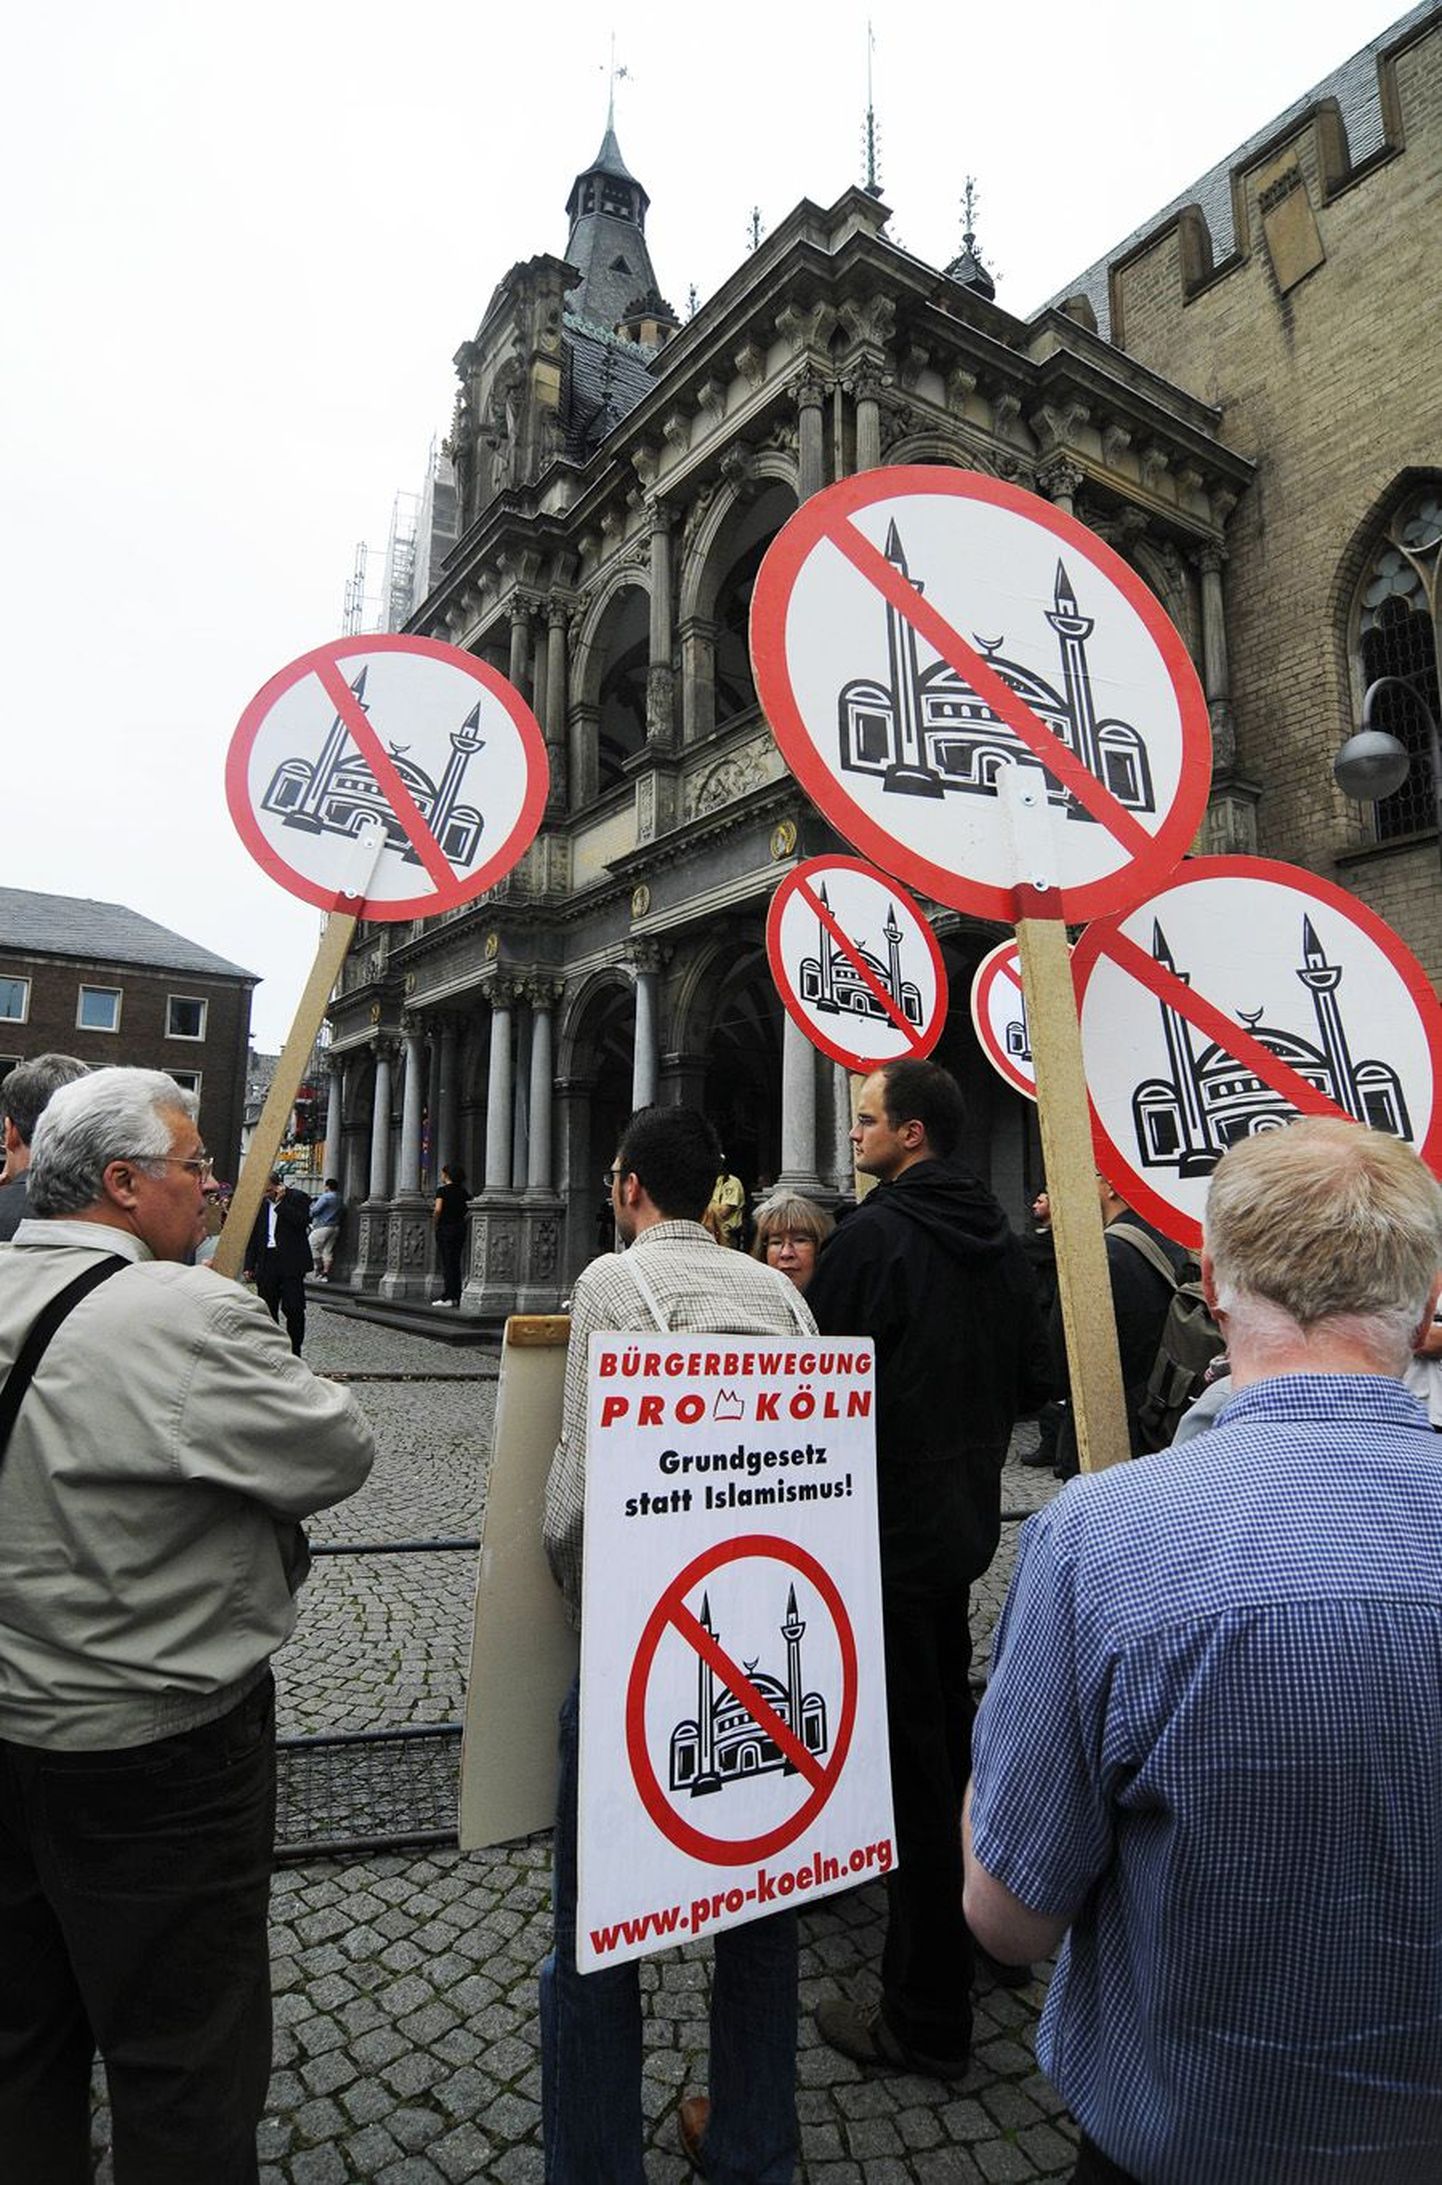 Mošeevastane meeleavaldus Kölnis. Loosung nõuab, et Saksamaal kehtiks islamismi asemel põhiseadus.